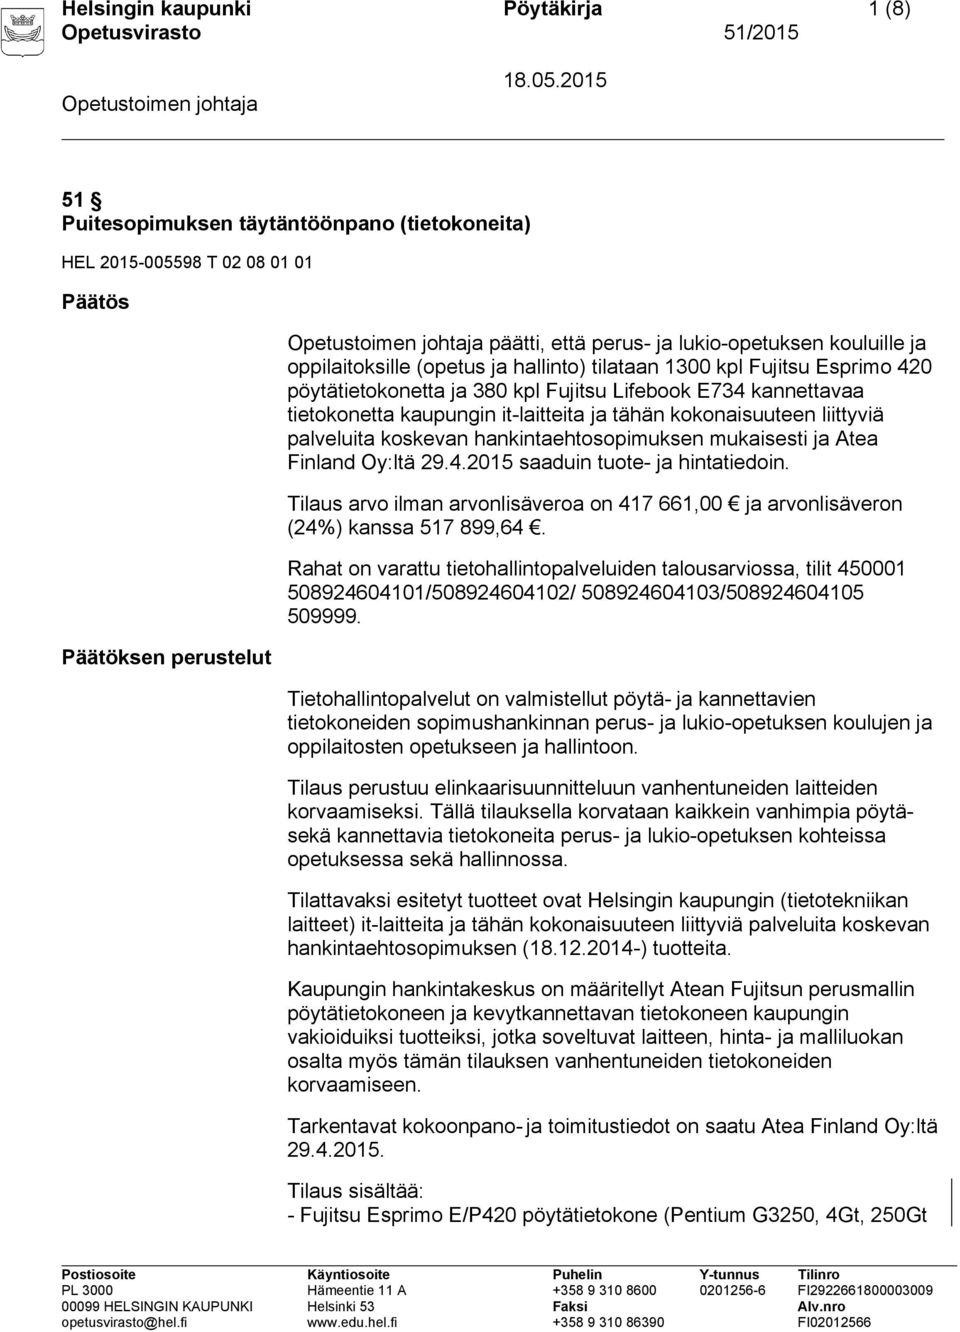 liittyviä palveluita koskevan hankintaehtosopimuksen mukaisesti ja Atea Finland Oy:ltä 29.4.2015 saaduin tuote- ja hintatiedoin.